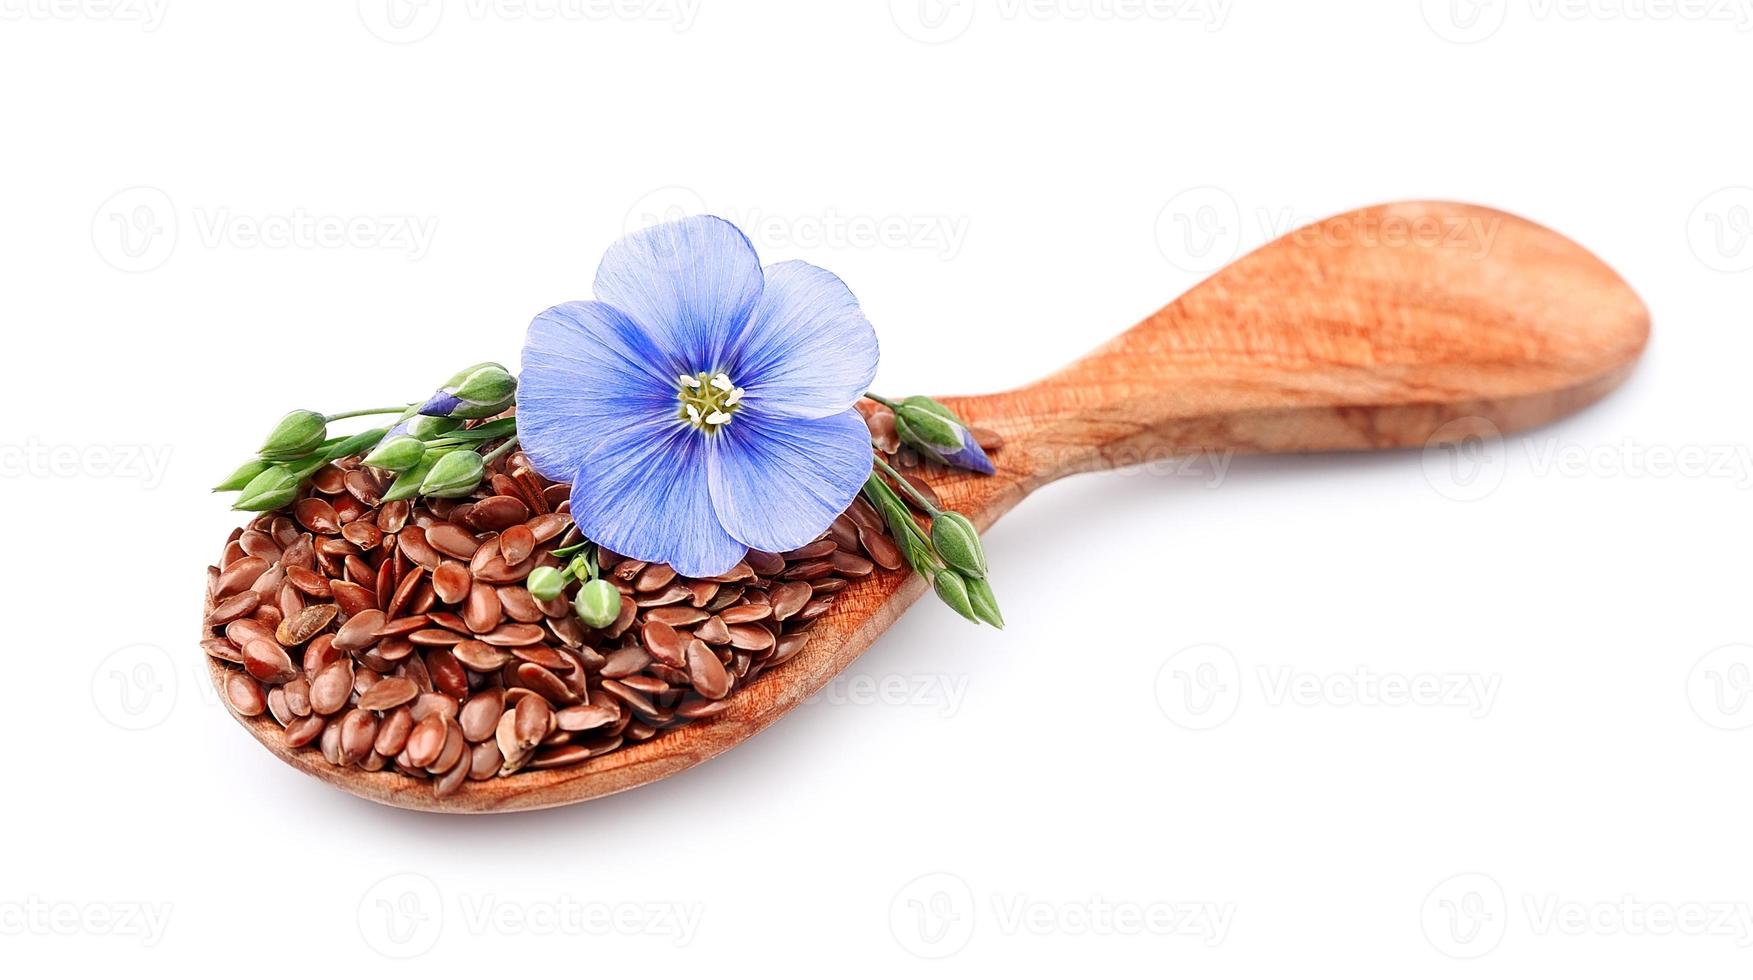 sementes de linho com flores foto